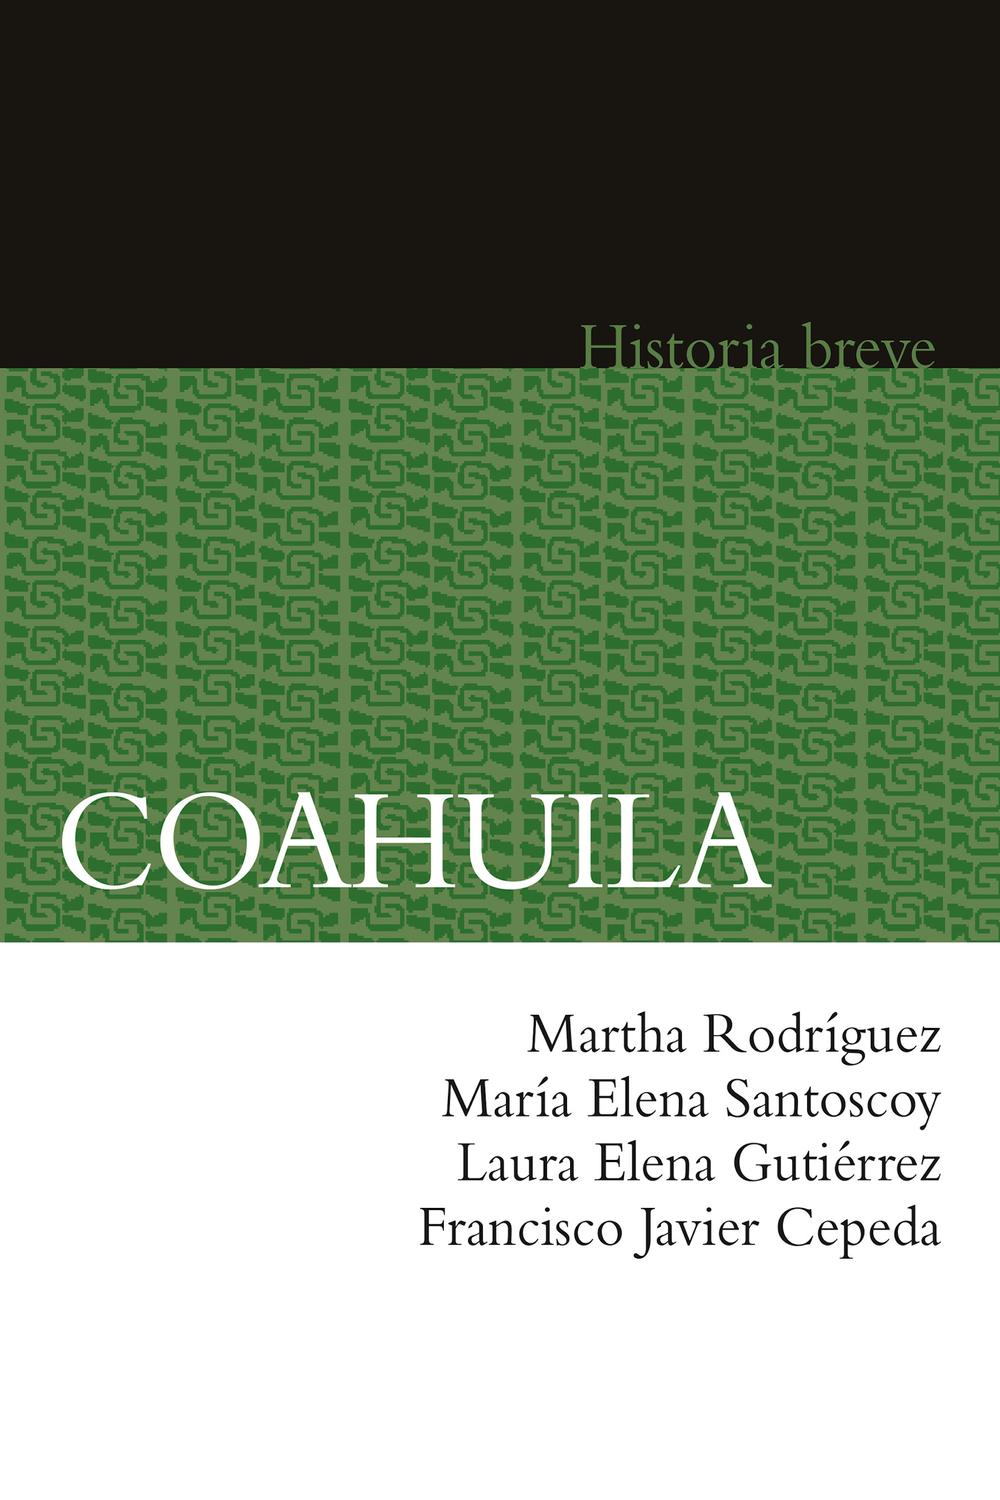 Coahuila - Martha Rodríguez, Laura Elena Gutiérrez, Francisco Javier Cepeda, María Elena Santoscoy